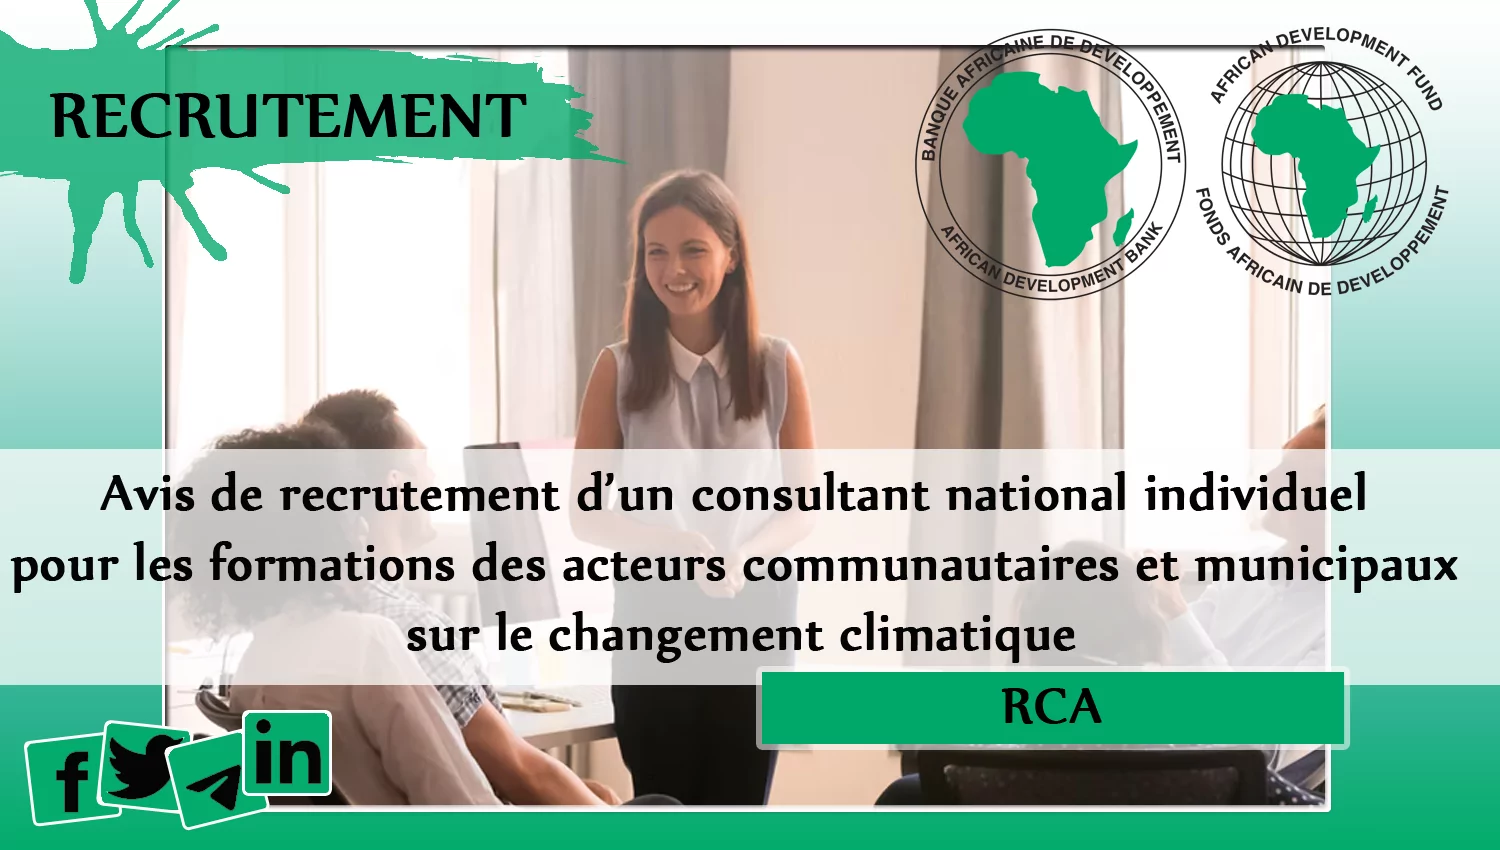 Avis de recrutement d’un consultant national individuel pour les formations des acteurs communautaires et municipaux sur le changement climatique, RCA